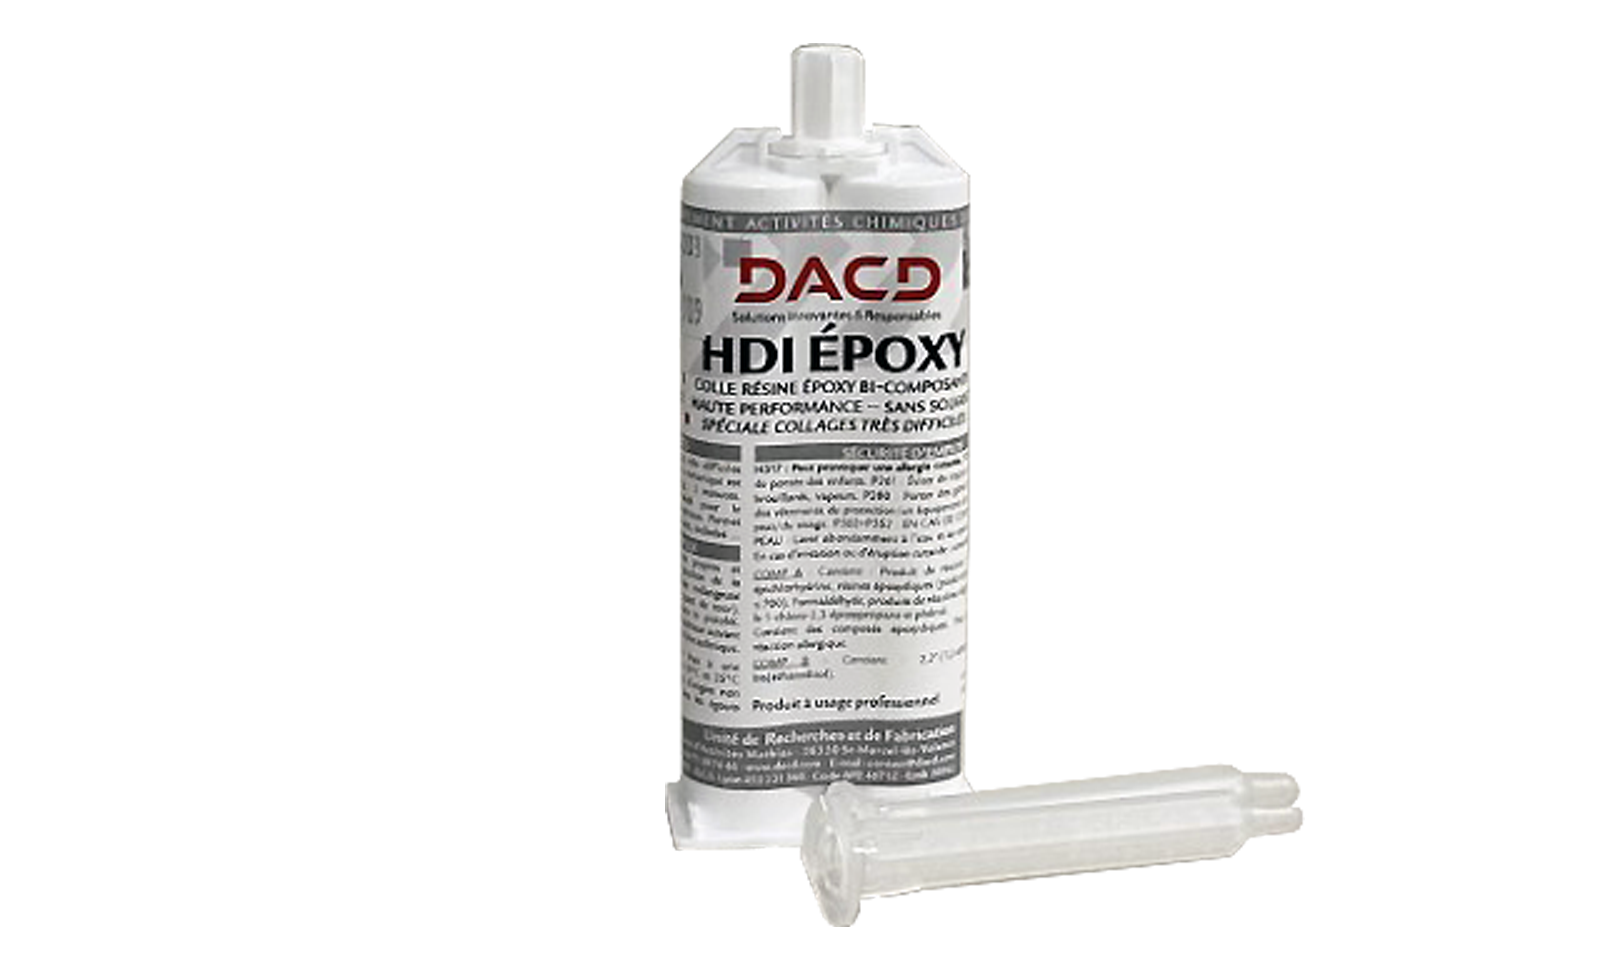 hdi-epoxy-1600x960